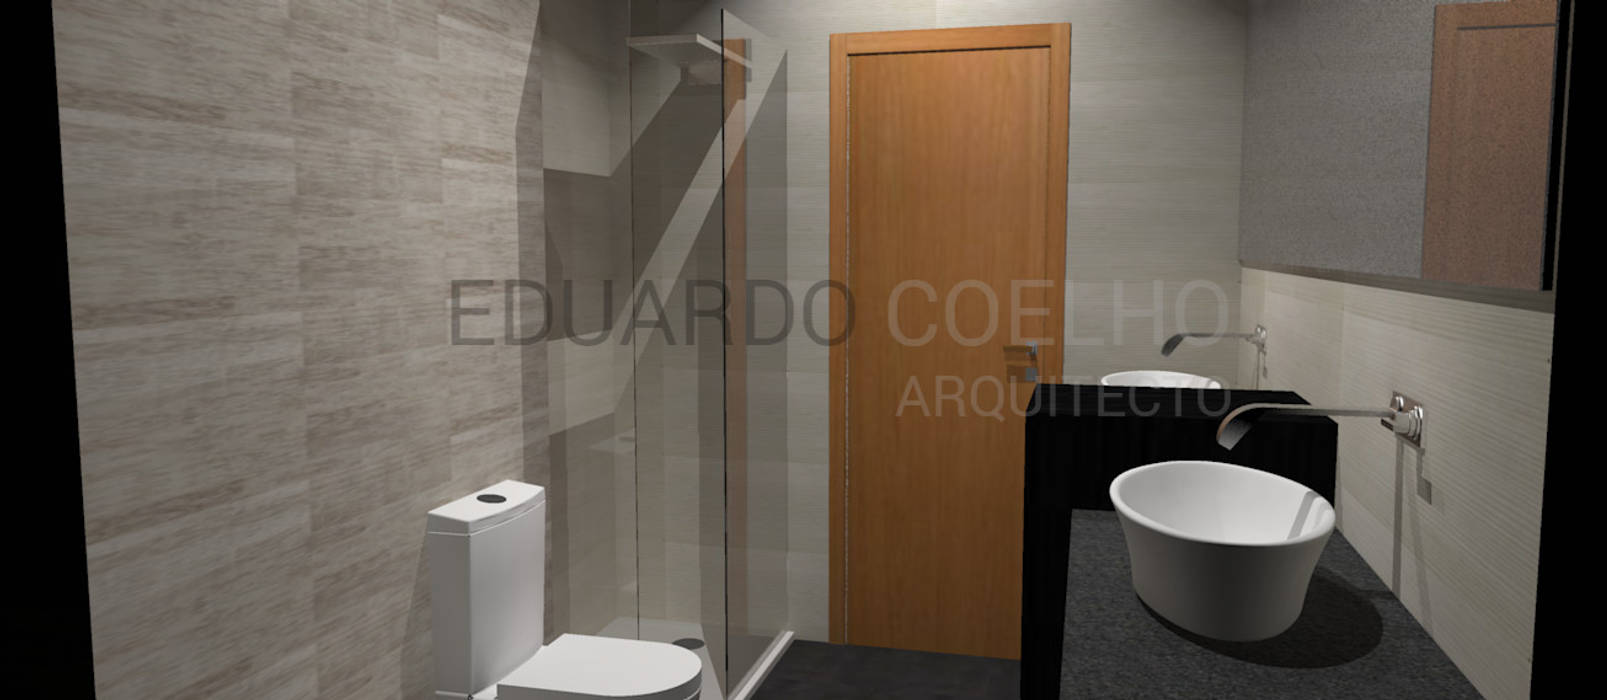 Remodelação de Casa de Banho Eduardo Coelho Arquitecto Casas de banho minimalistas Suites